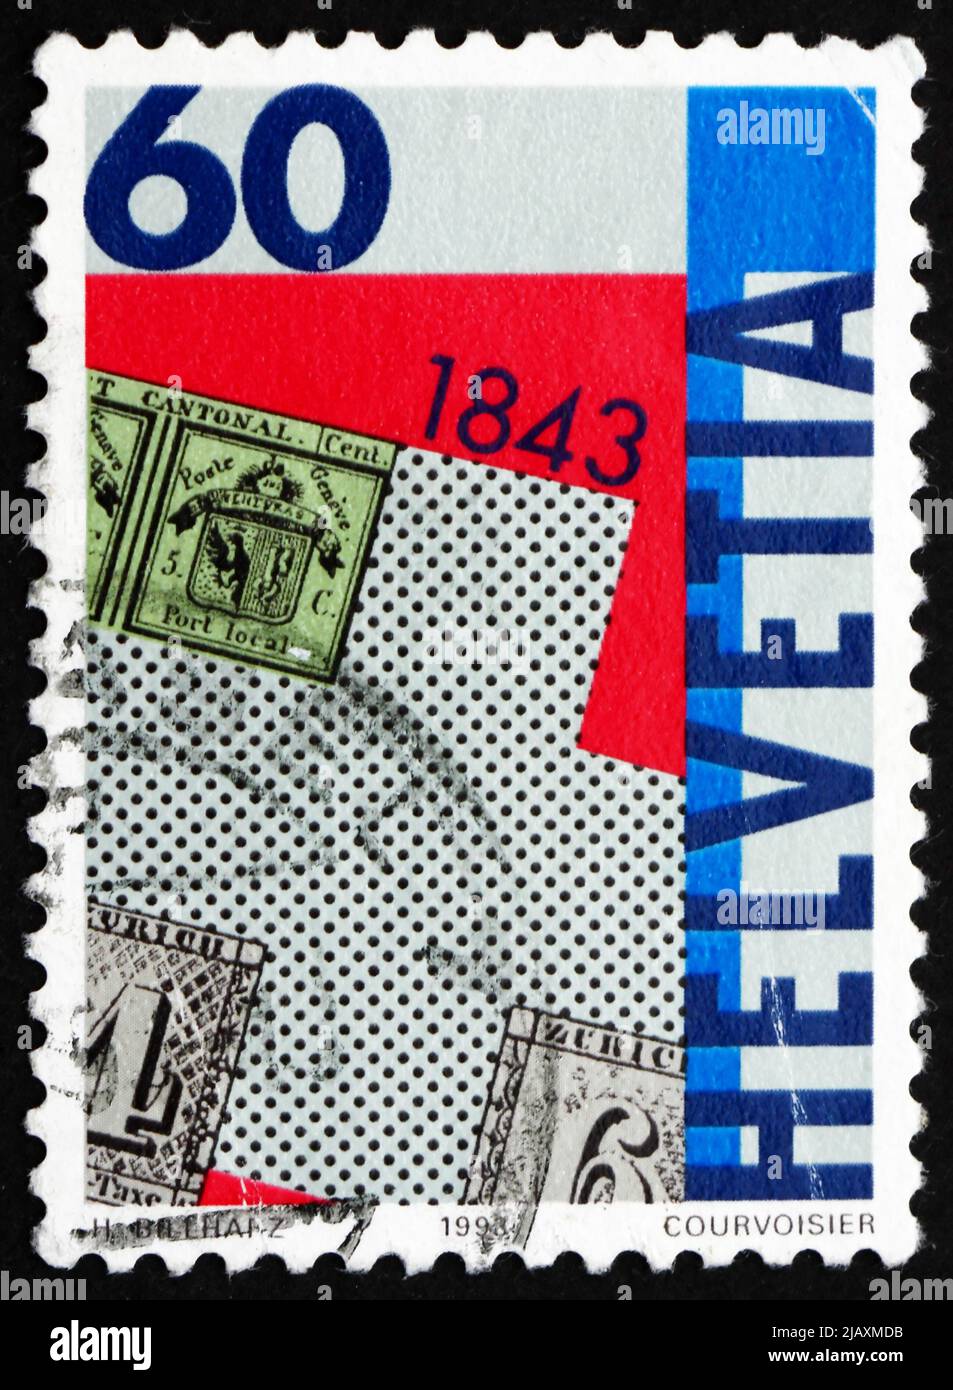 SVIZZERA - CIRCA 1993: Un francobollo stampato in Svizzera mostra francobollo Zurigo tipi A1 e A2, 150th anniversario del primo francobollo svizzero Foto Stock